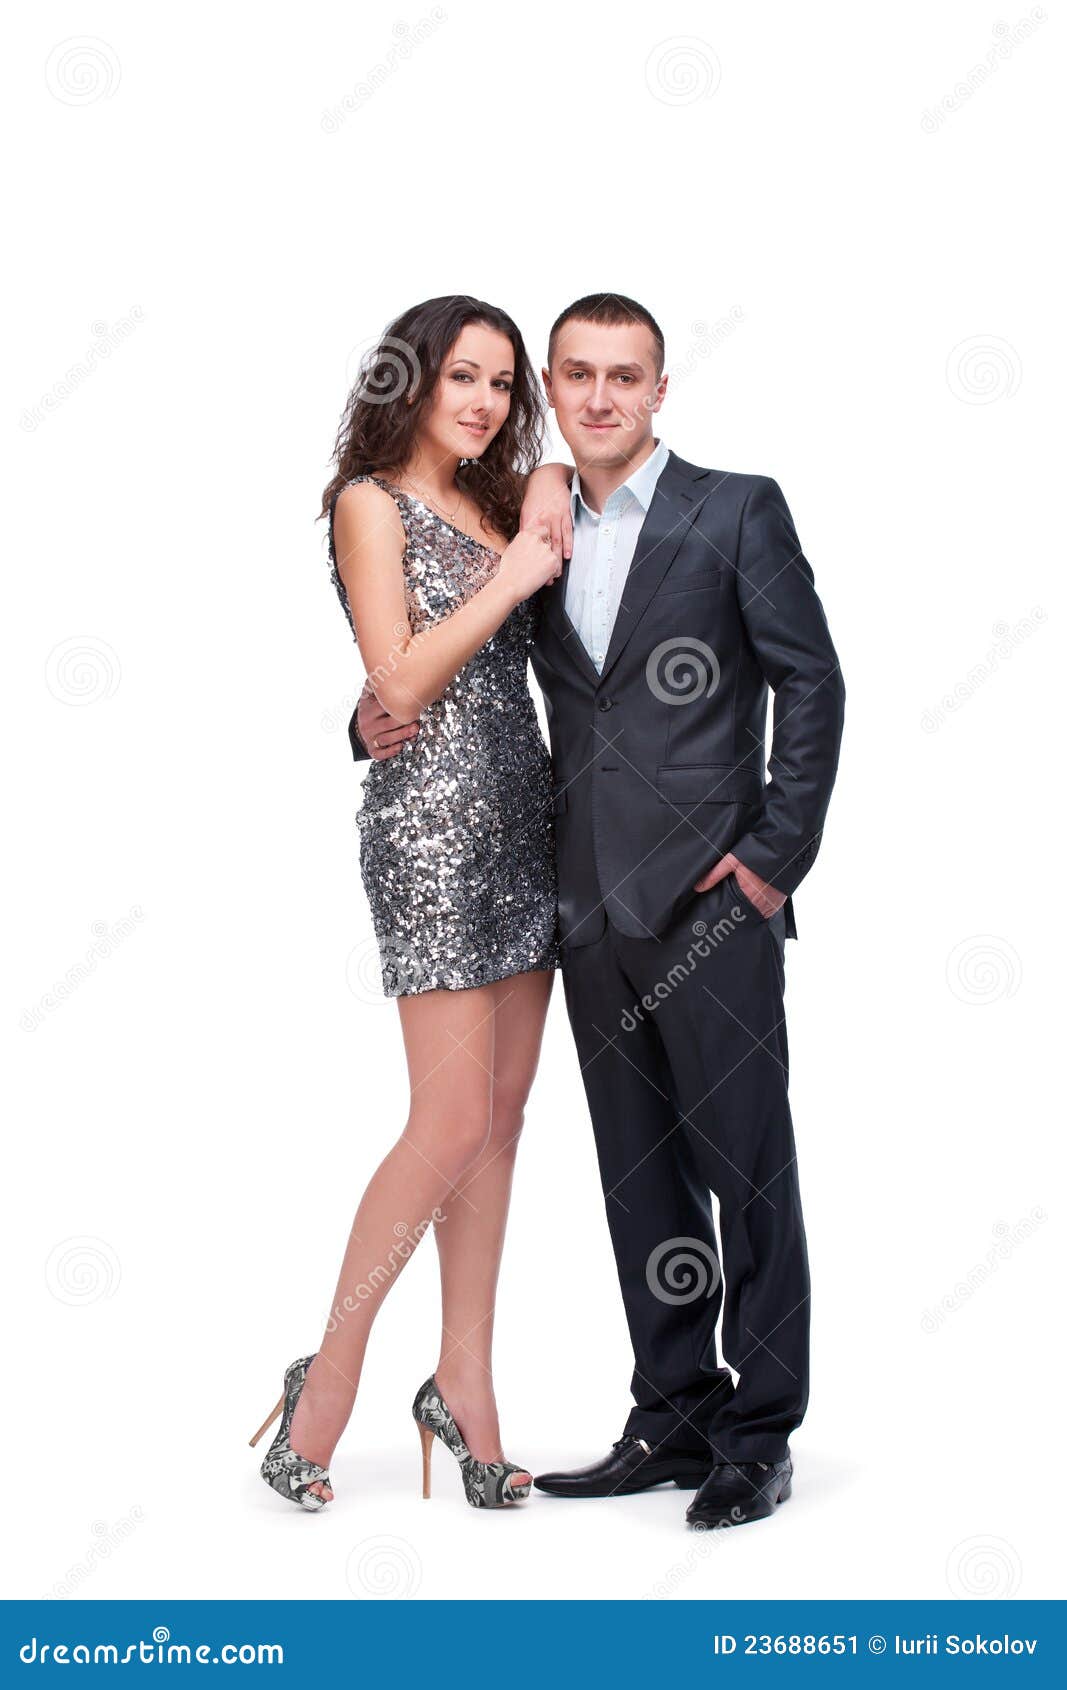 couple in formal wear